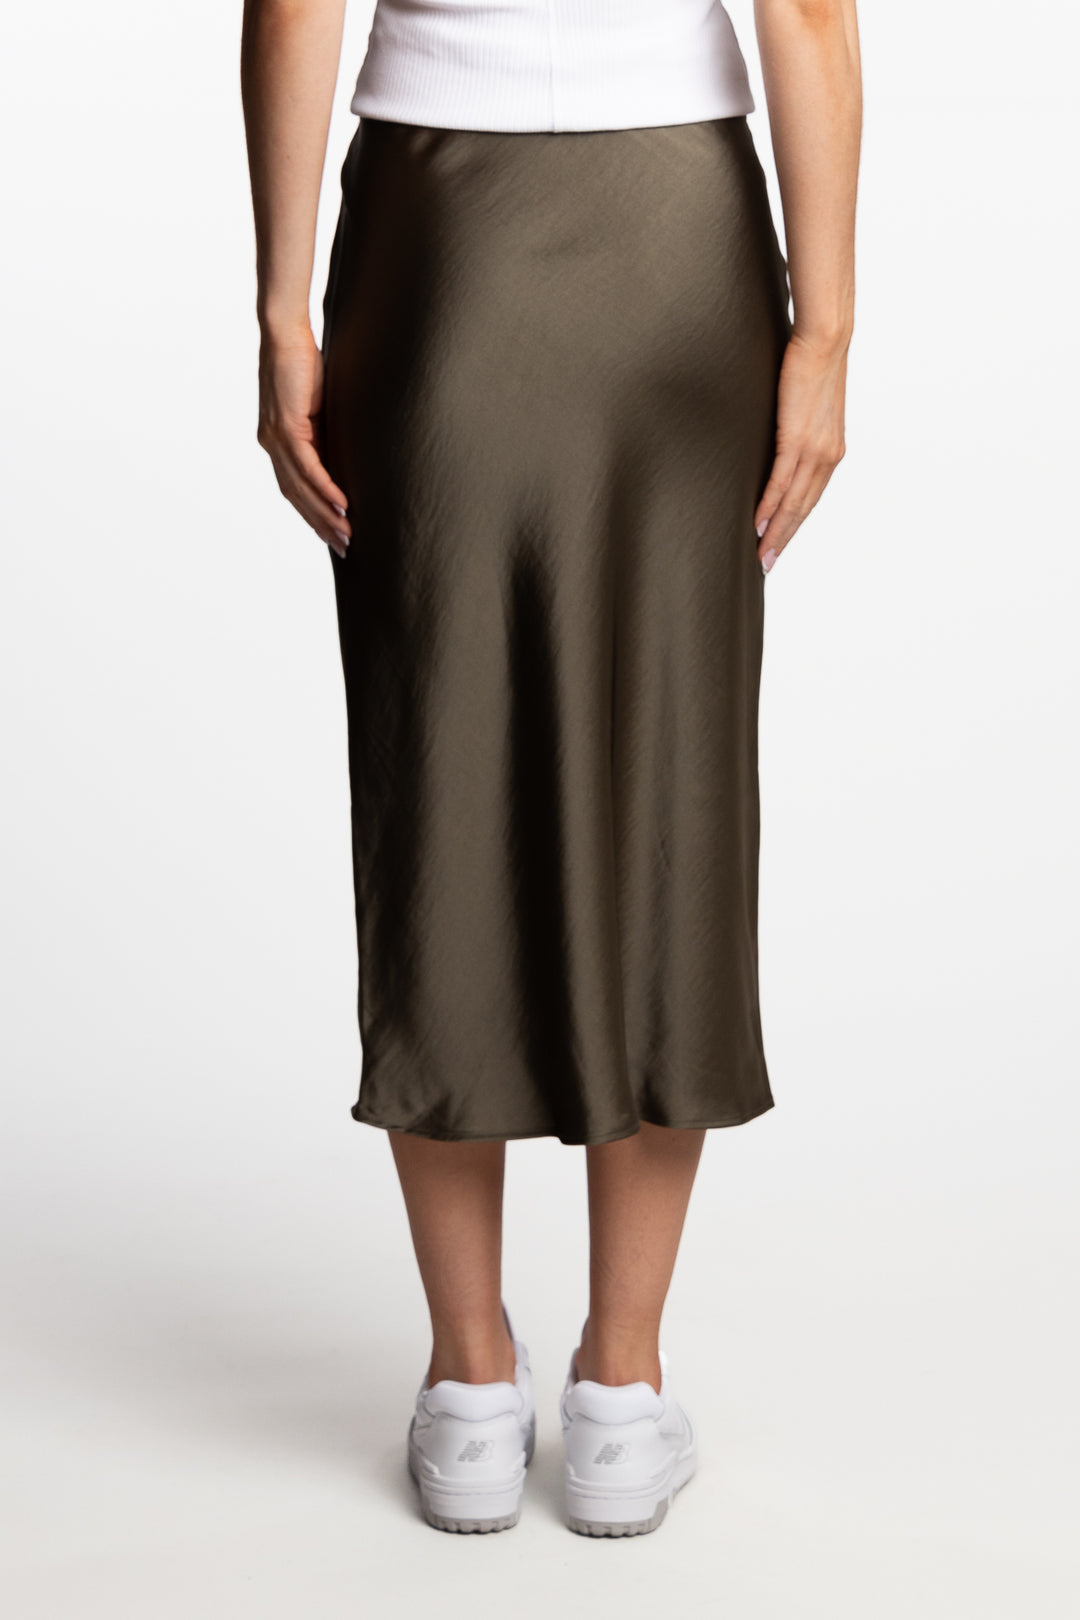 Agneta Skirt 12956- Dusty Olive